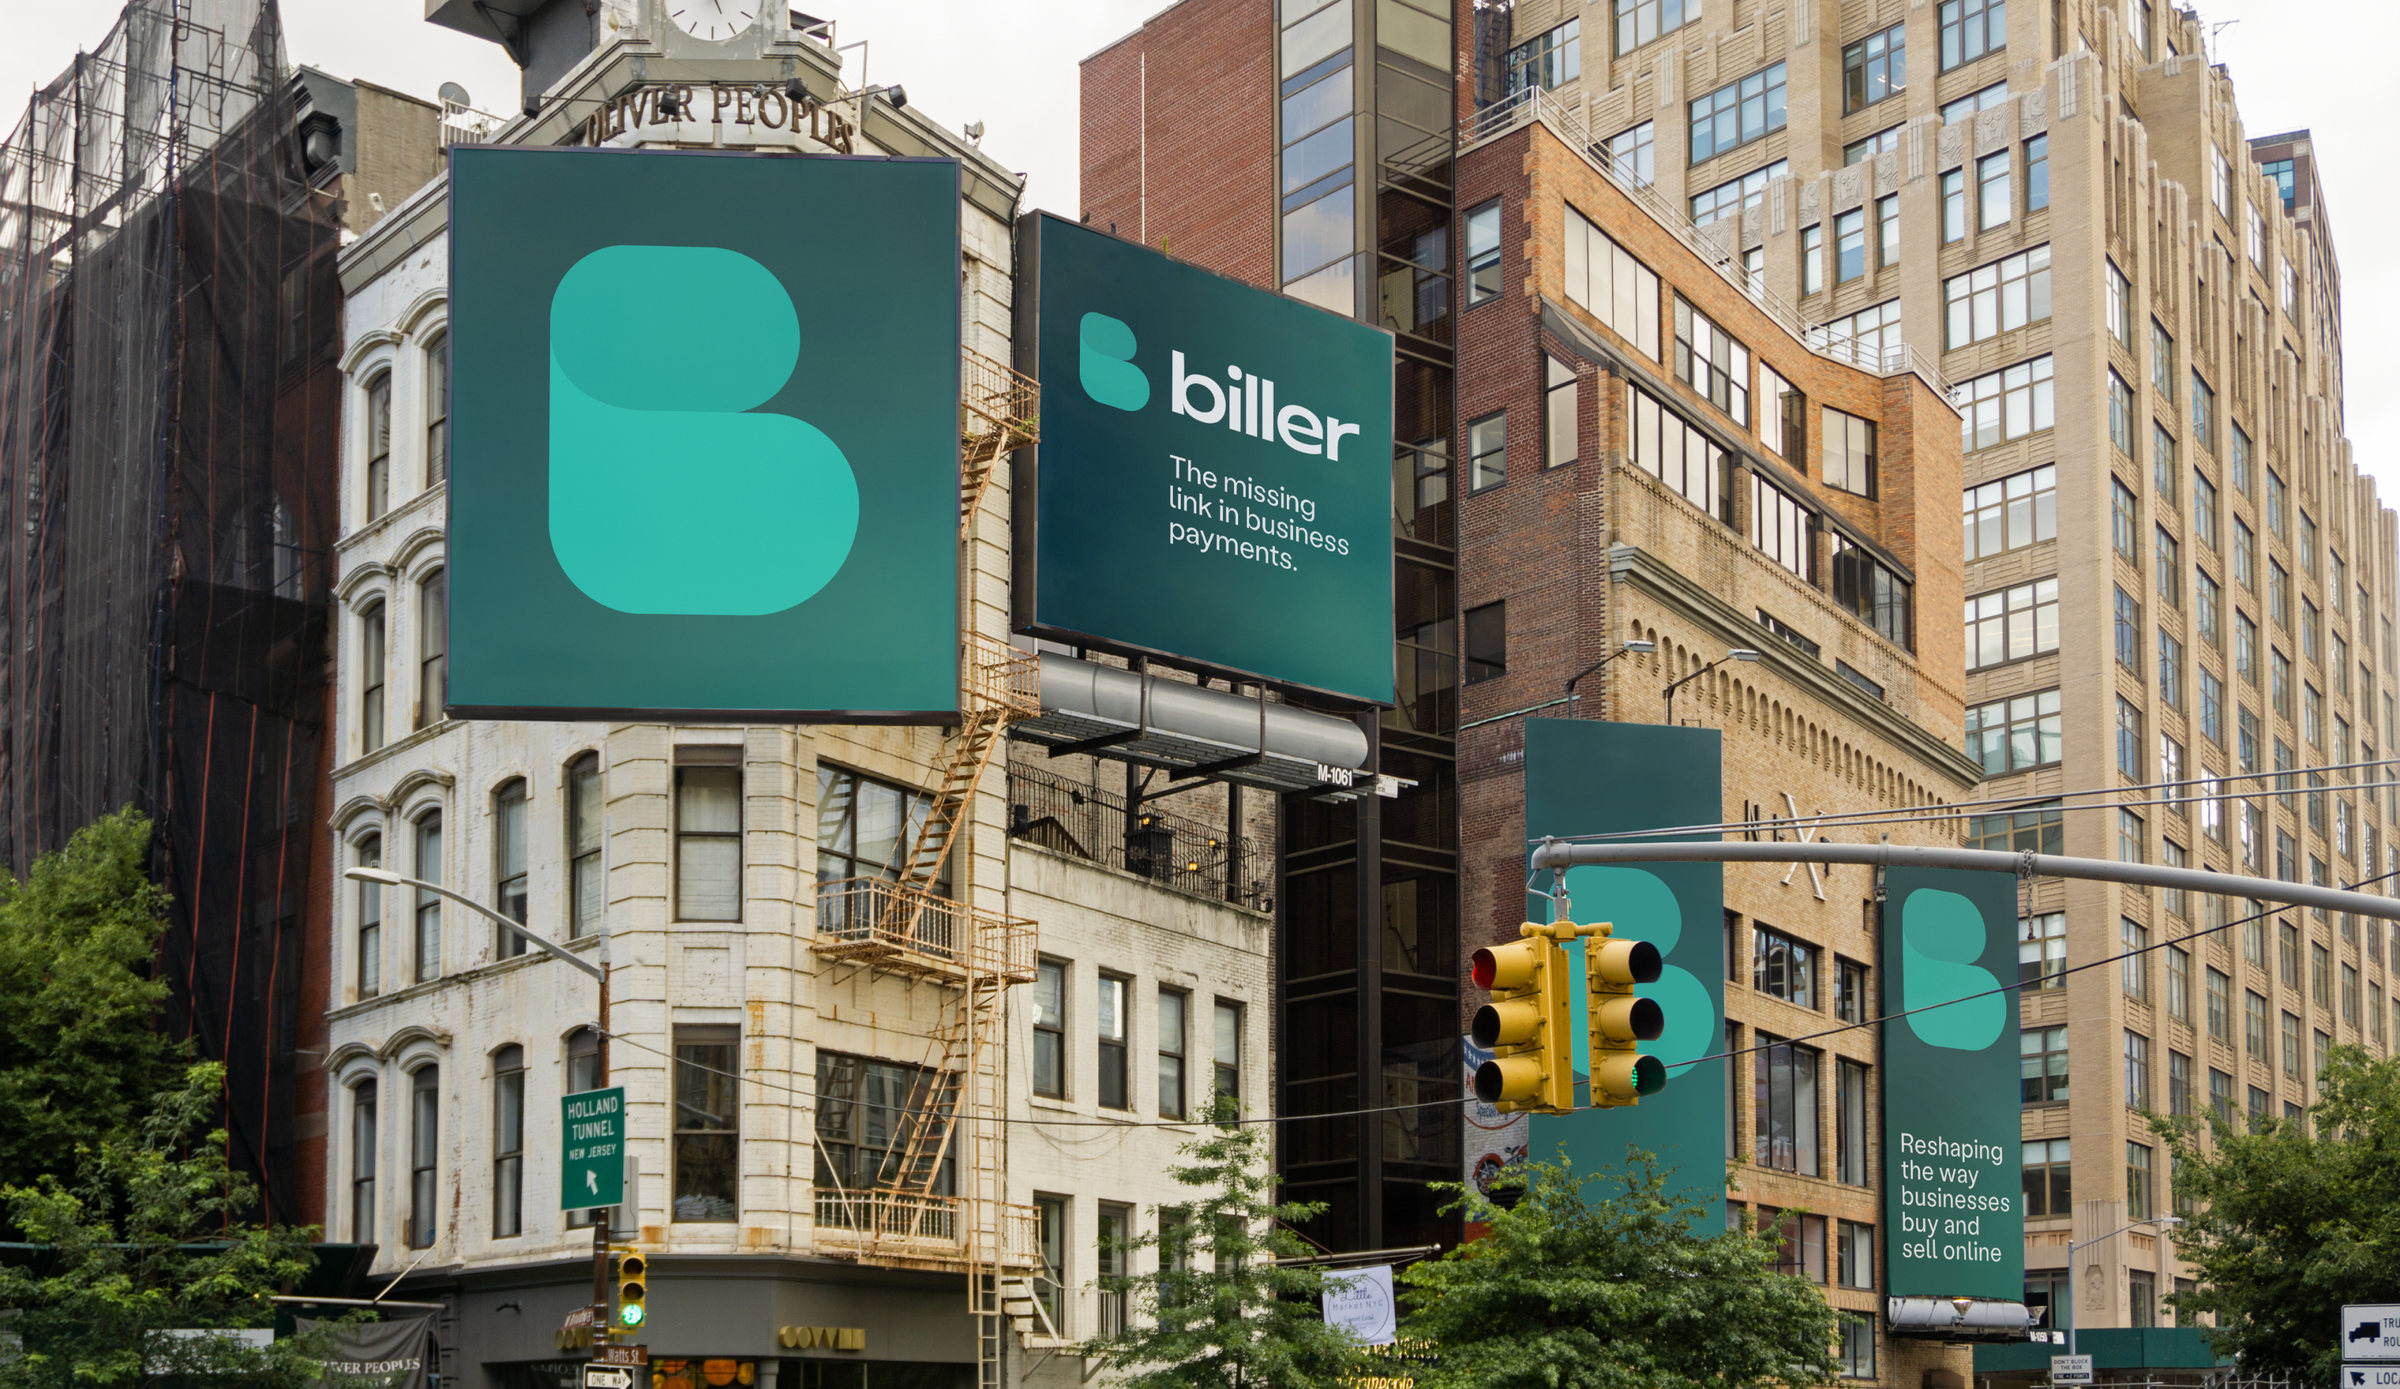 Header image with billboards of the biller logo